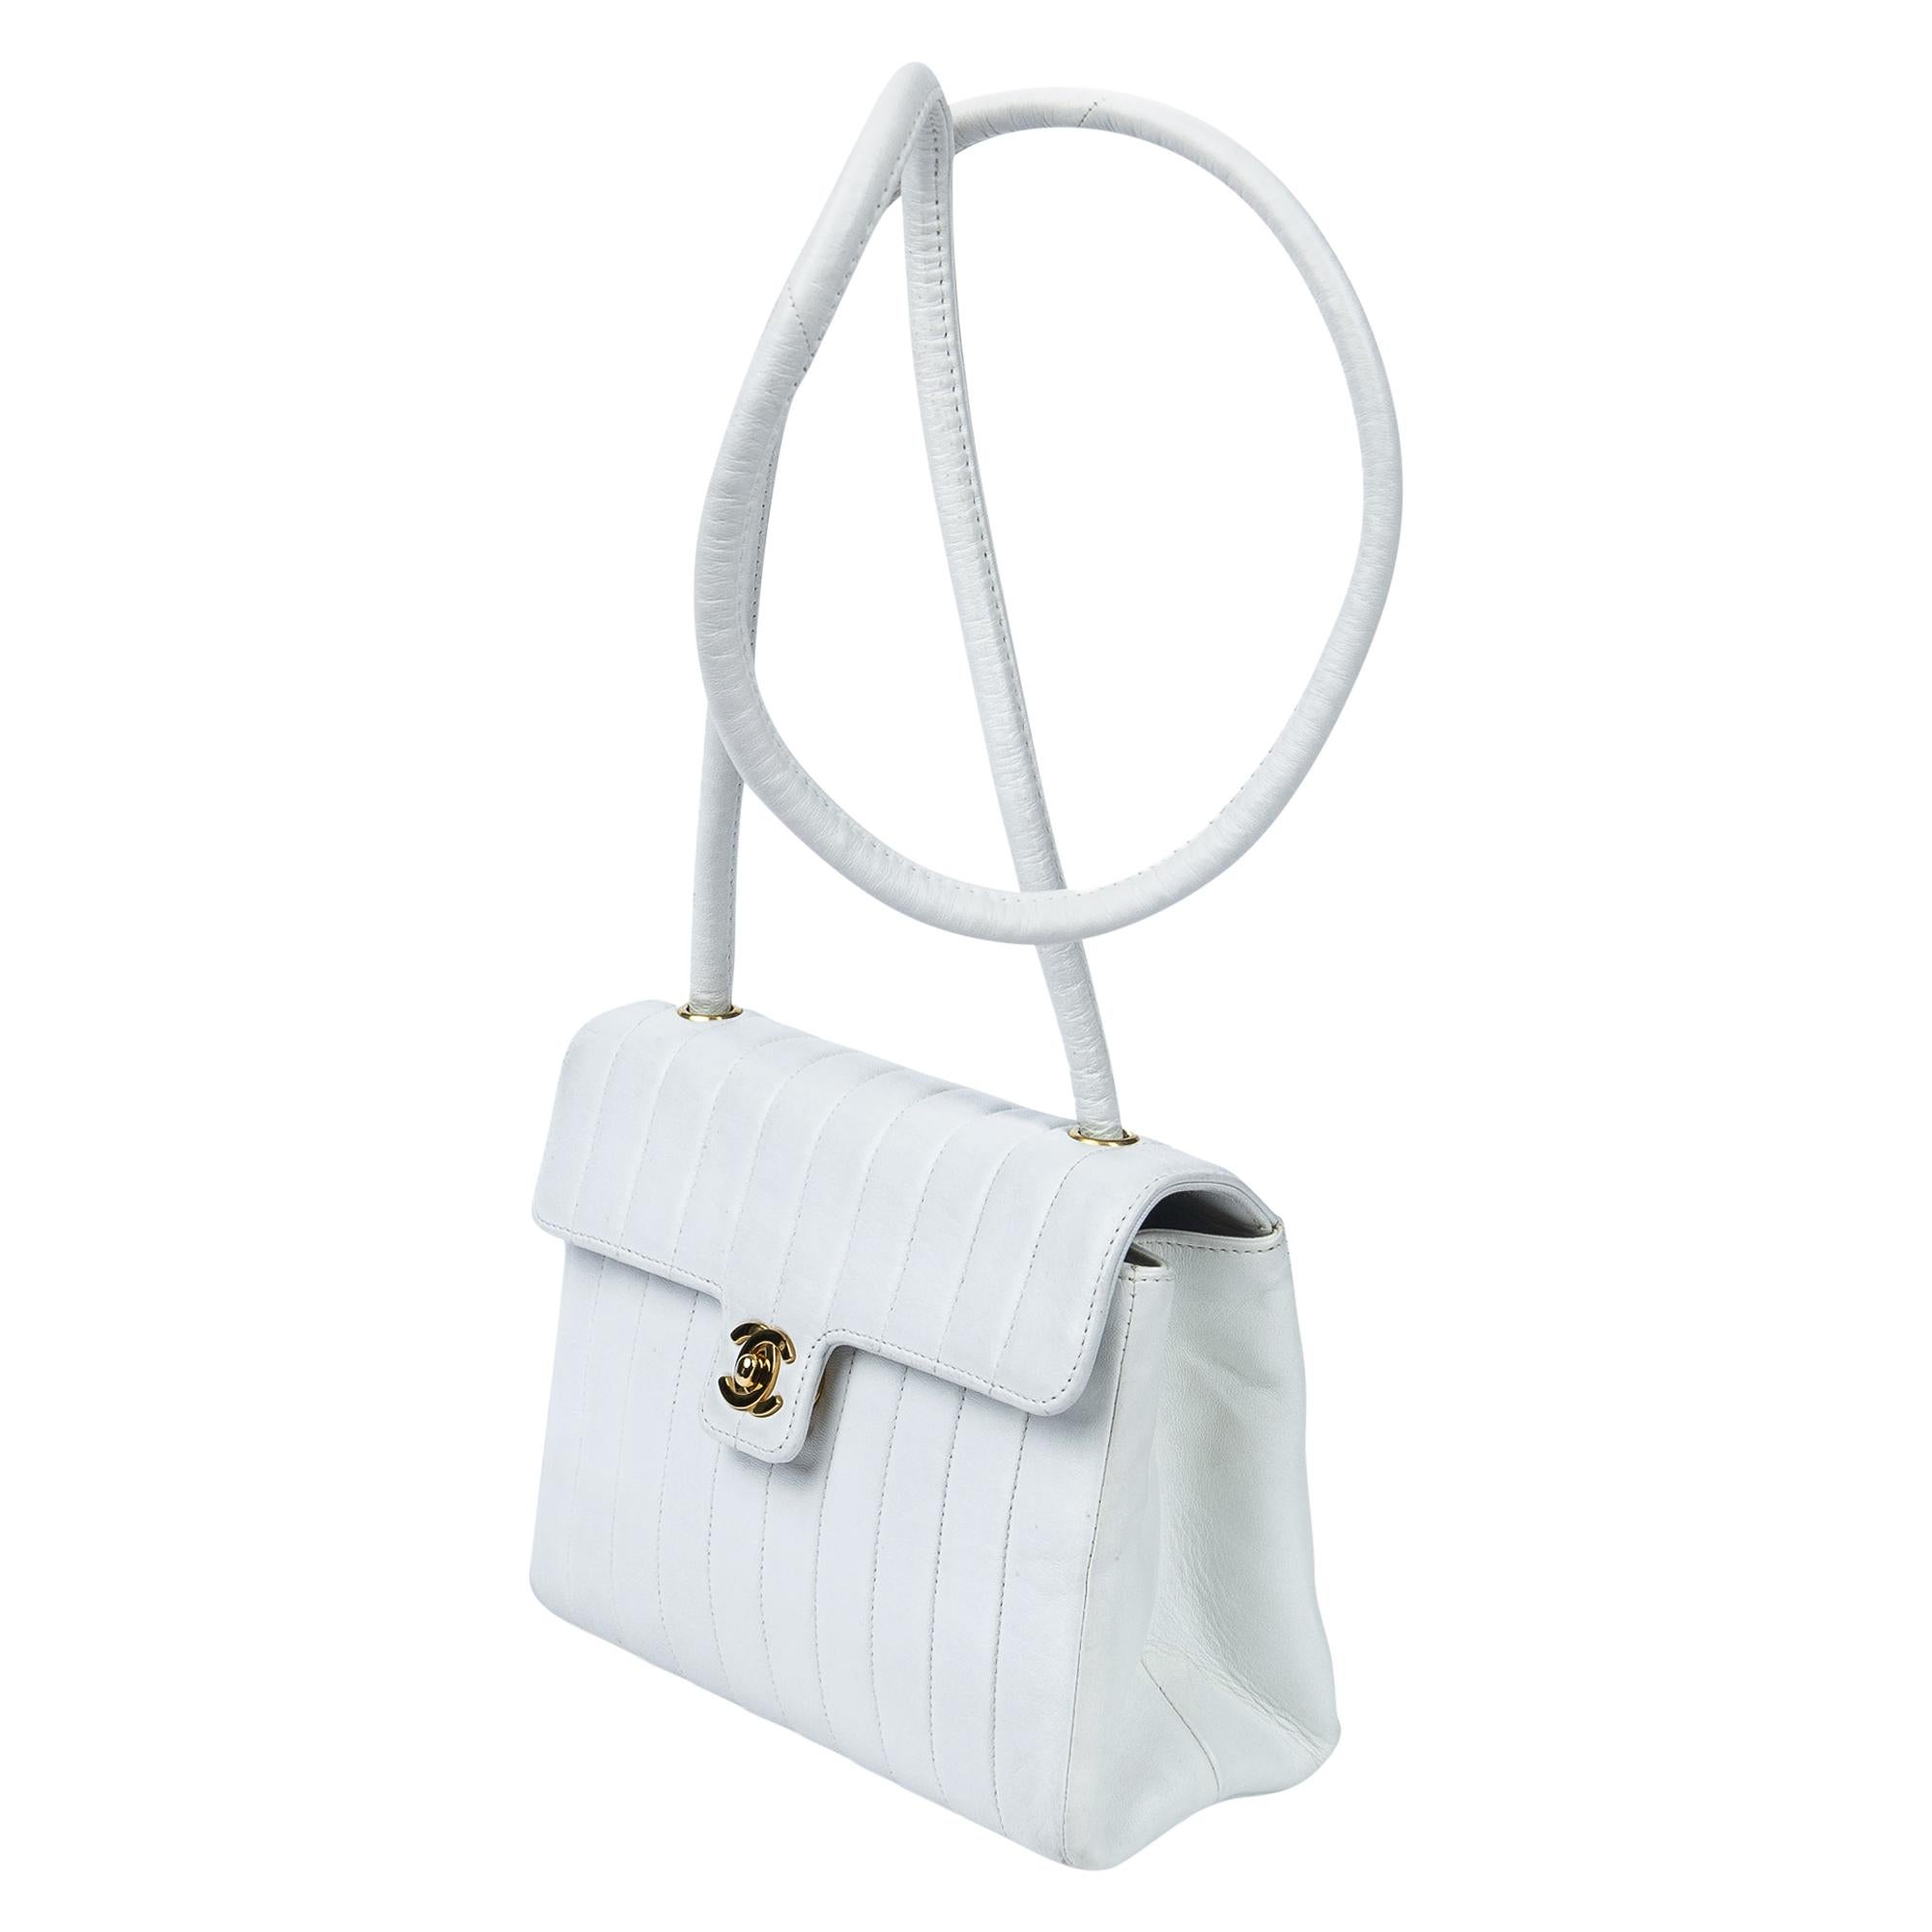 Gönnen Sie sich zeitlose Eleganz mit der Chanel 1991 White Striated CC Turnlock Flap Bag. Gefertigt aus luxuriösem Lammleder in makellosem Weiß ist sie der Inbegriff von Raffinesse. Das ledergefütterte Innere ist mit dem charakteristischen